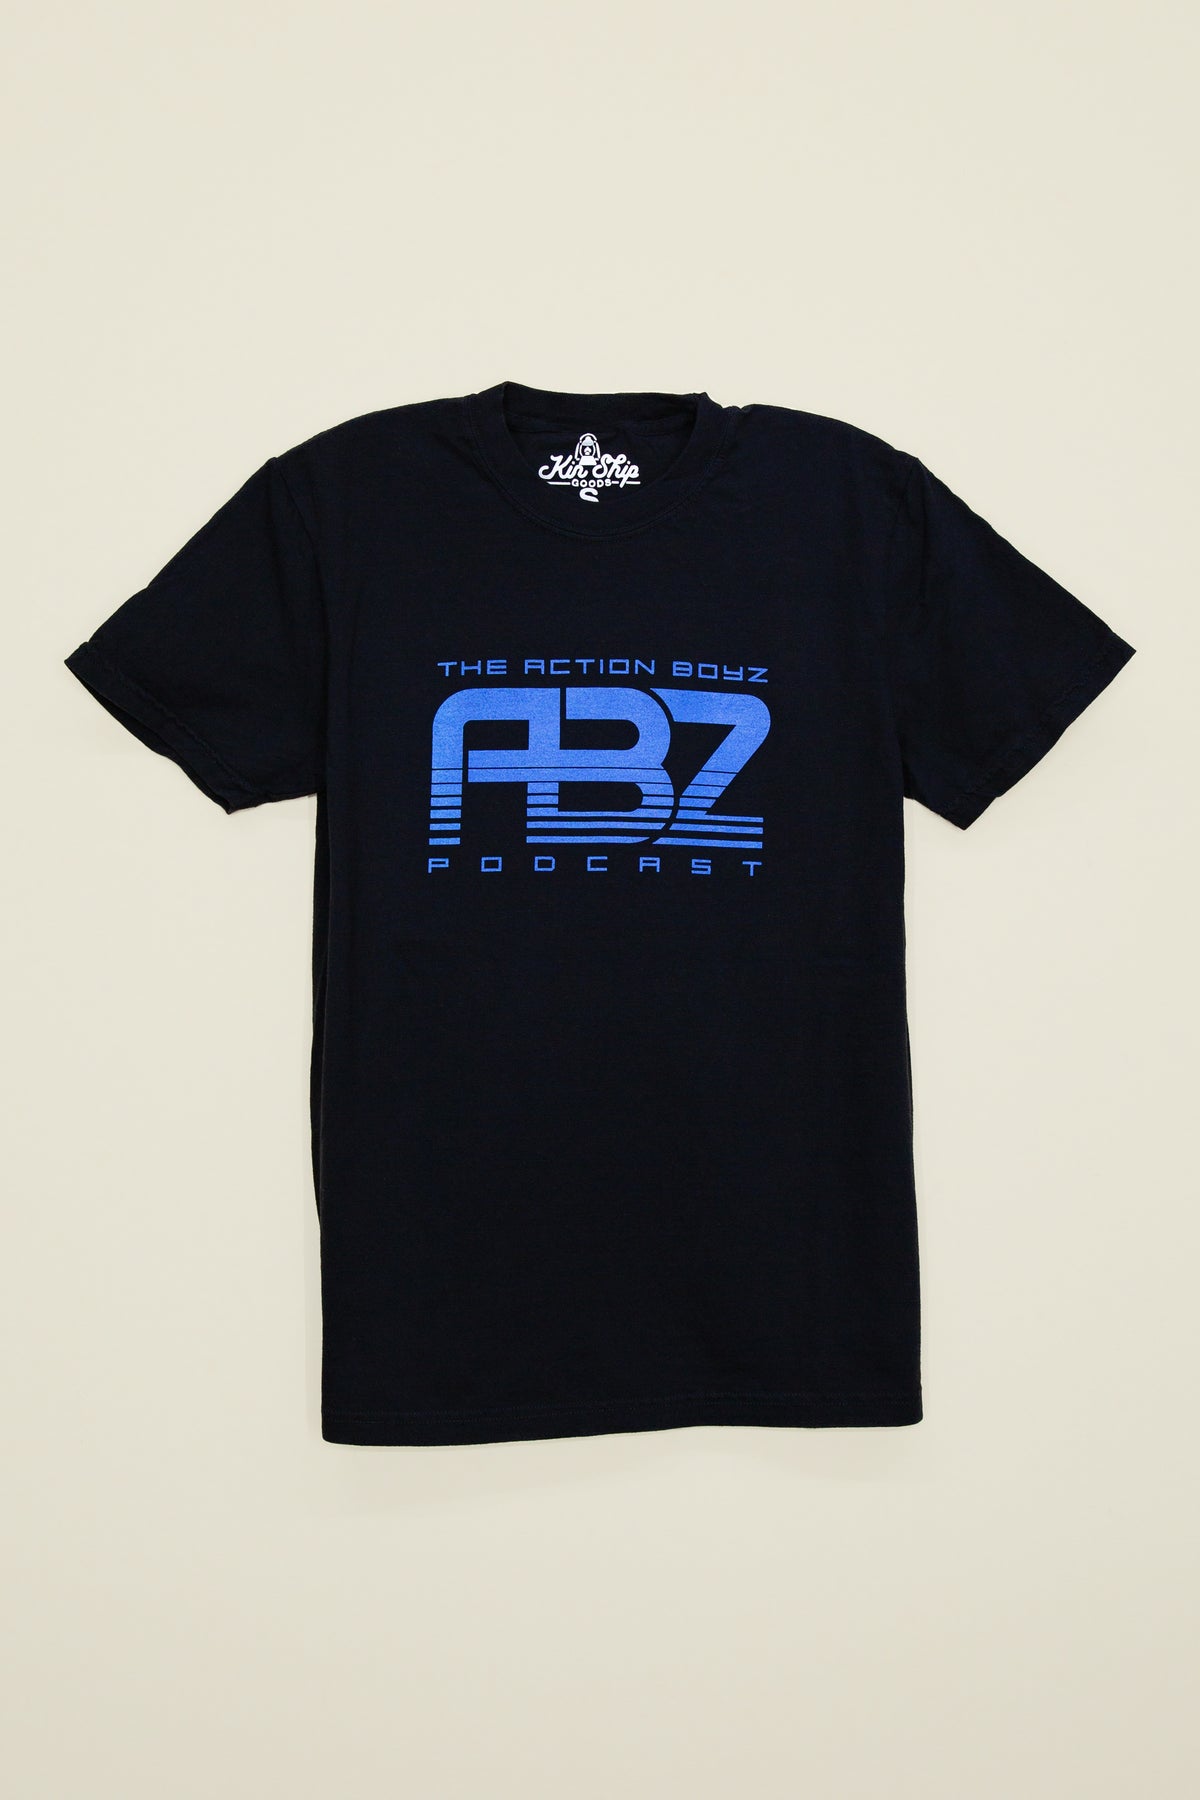 Action Boyz: ABZ logo tee, black